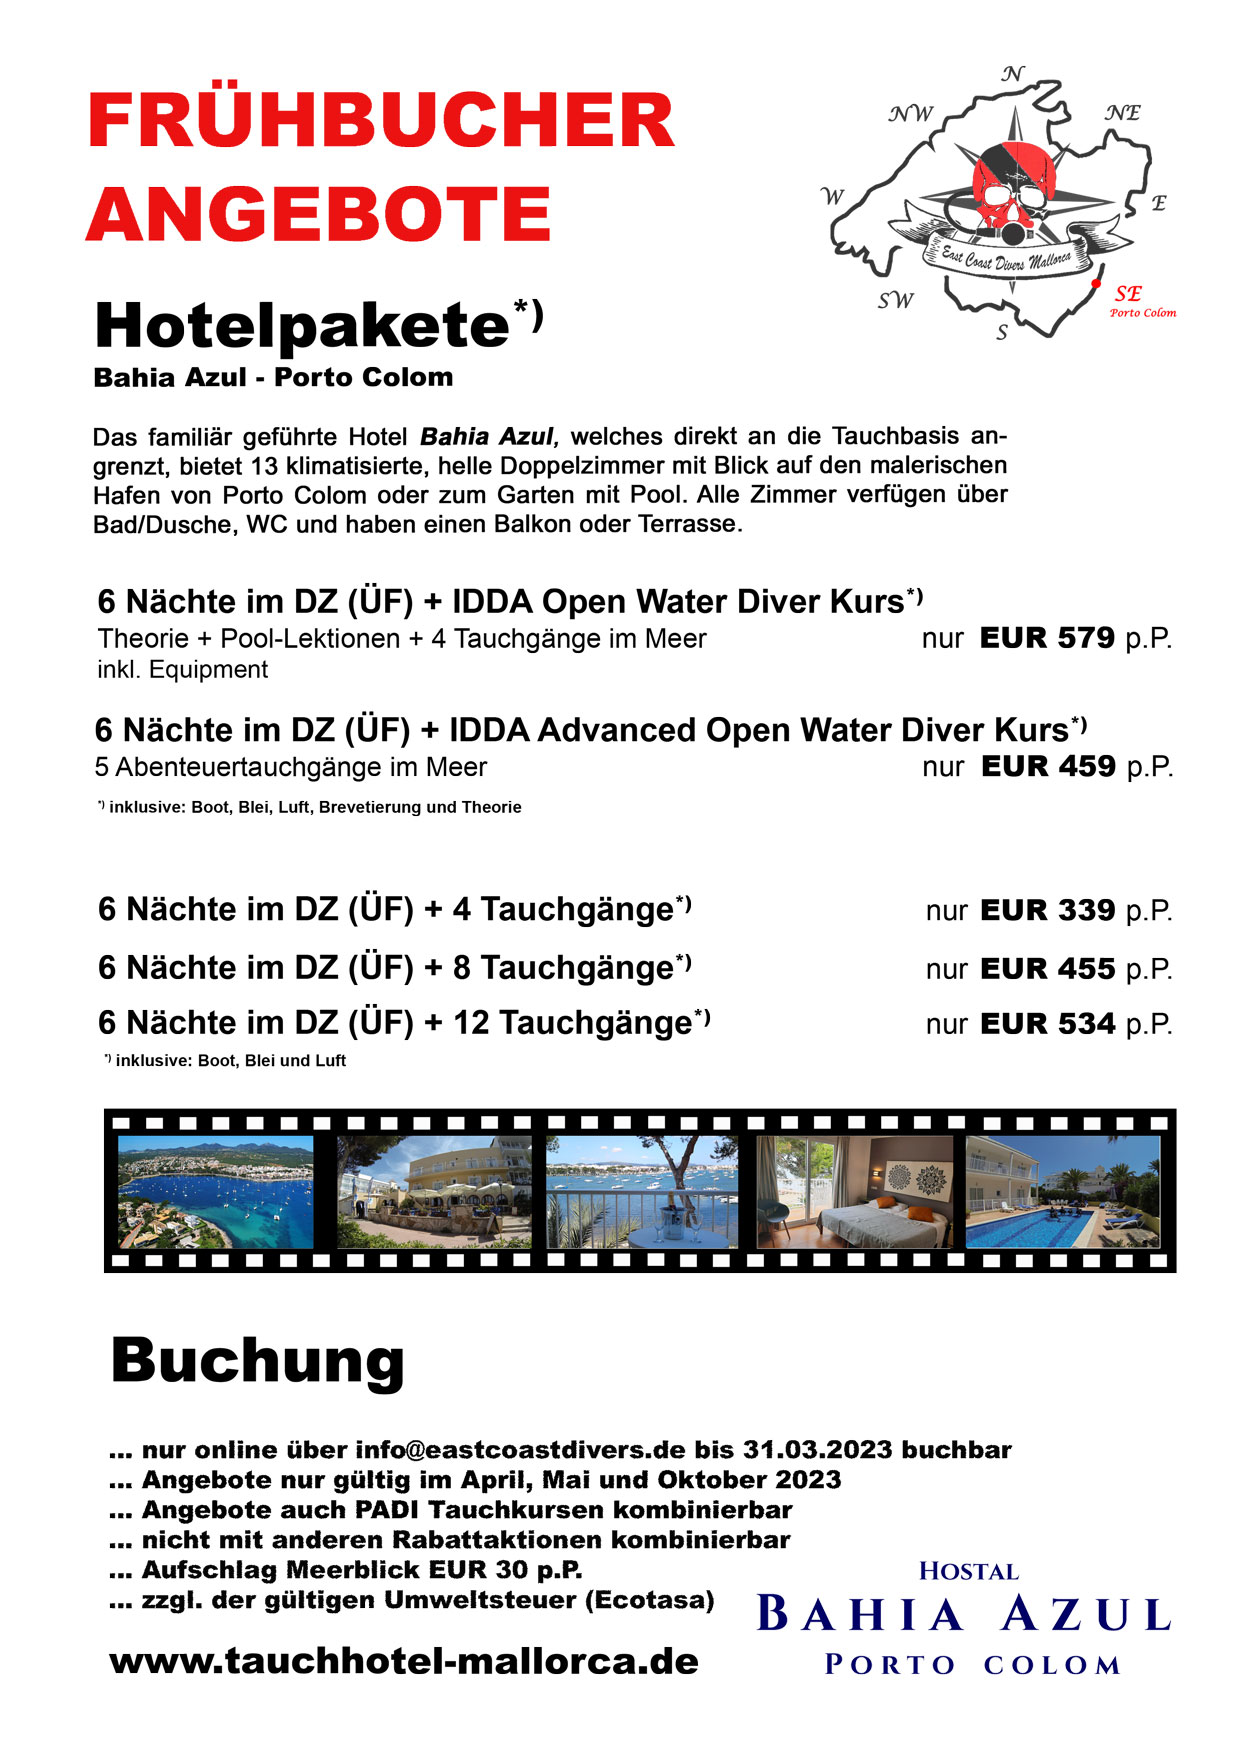 Angebote Tauchen & Hotel Saison 2023 